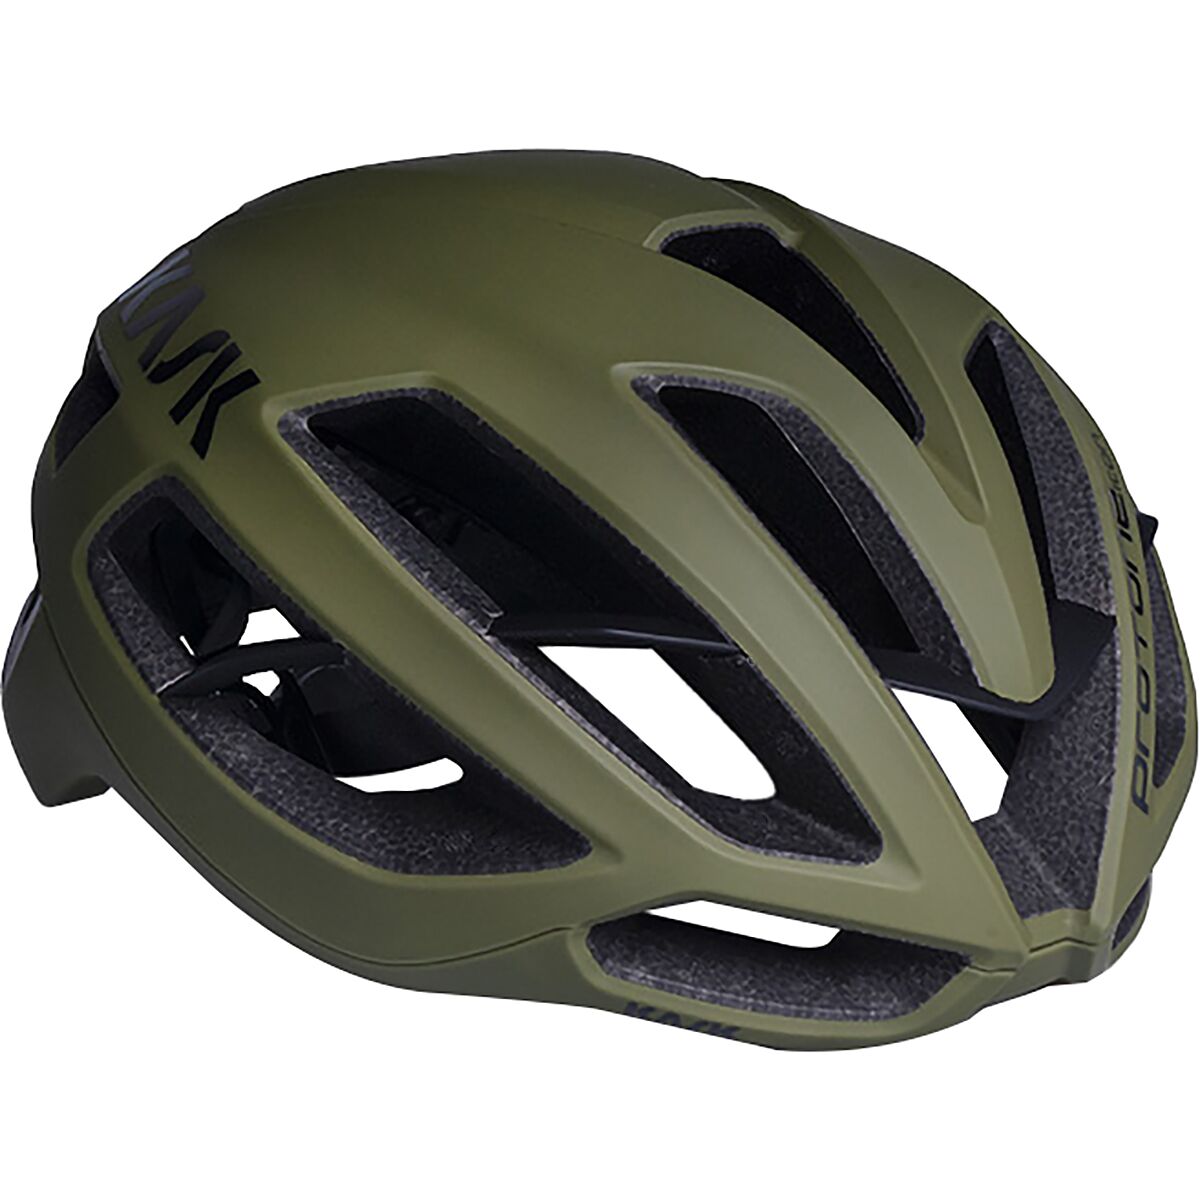 Protone Icon Helmet Bike